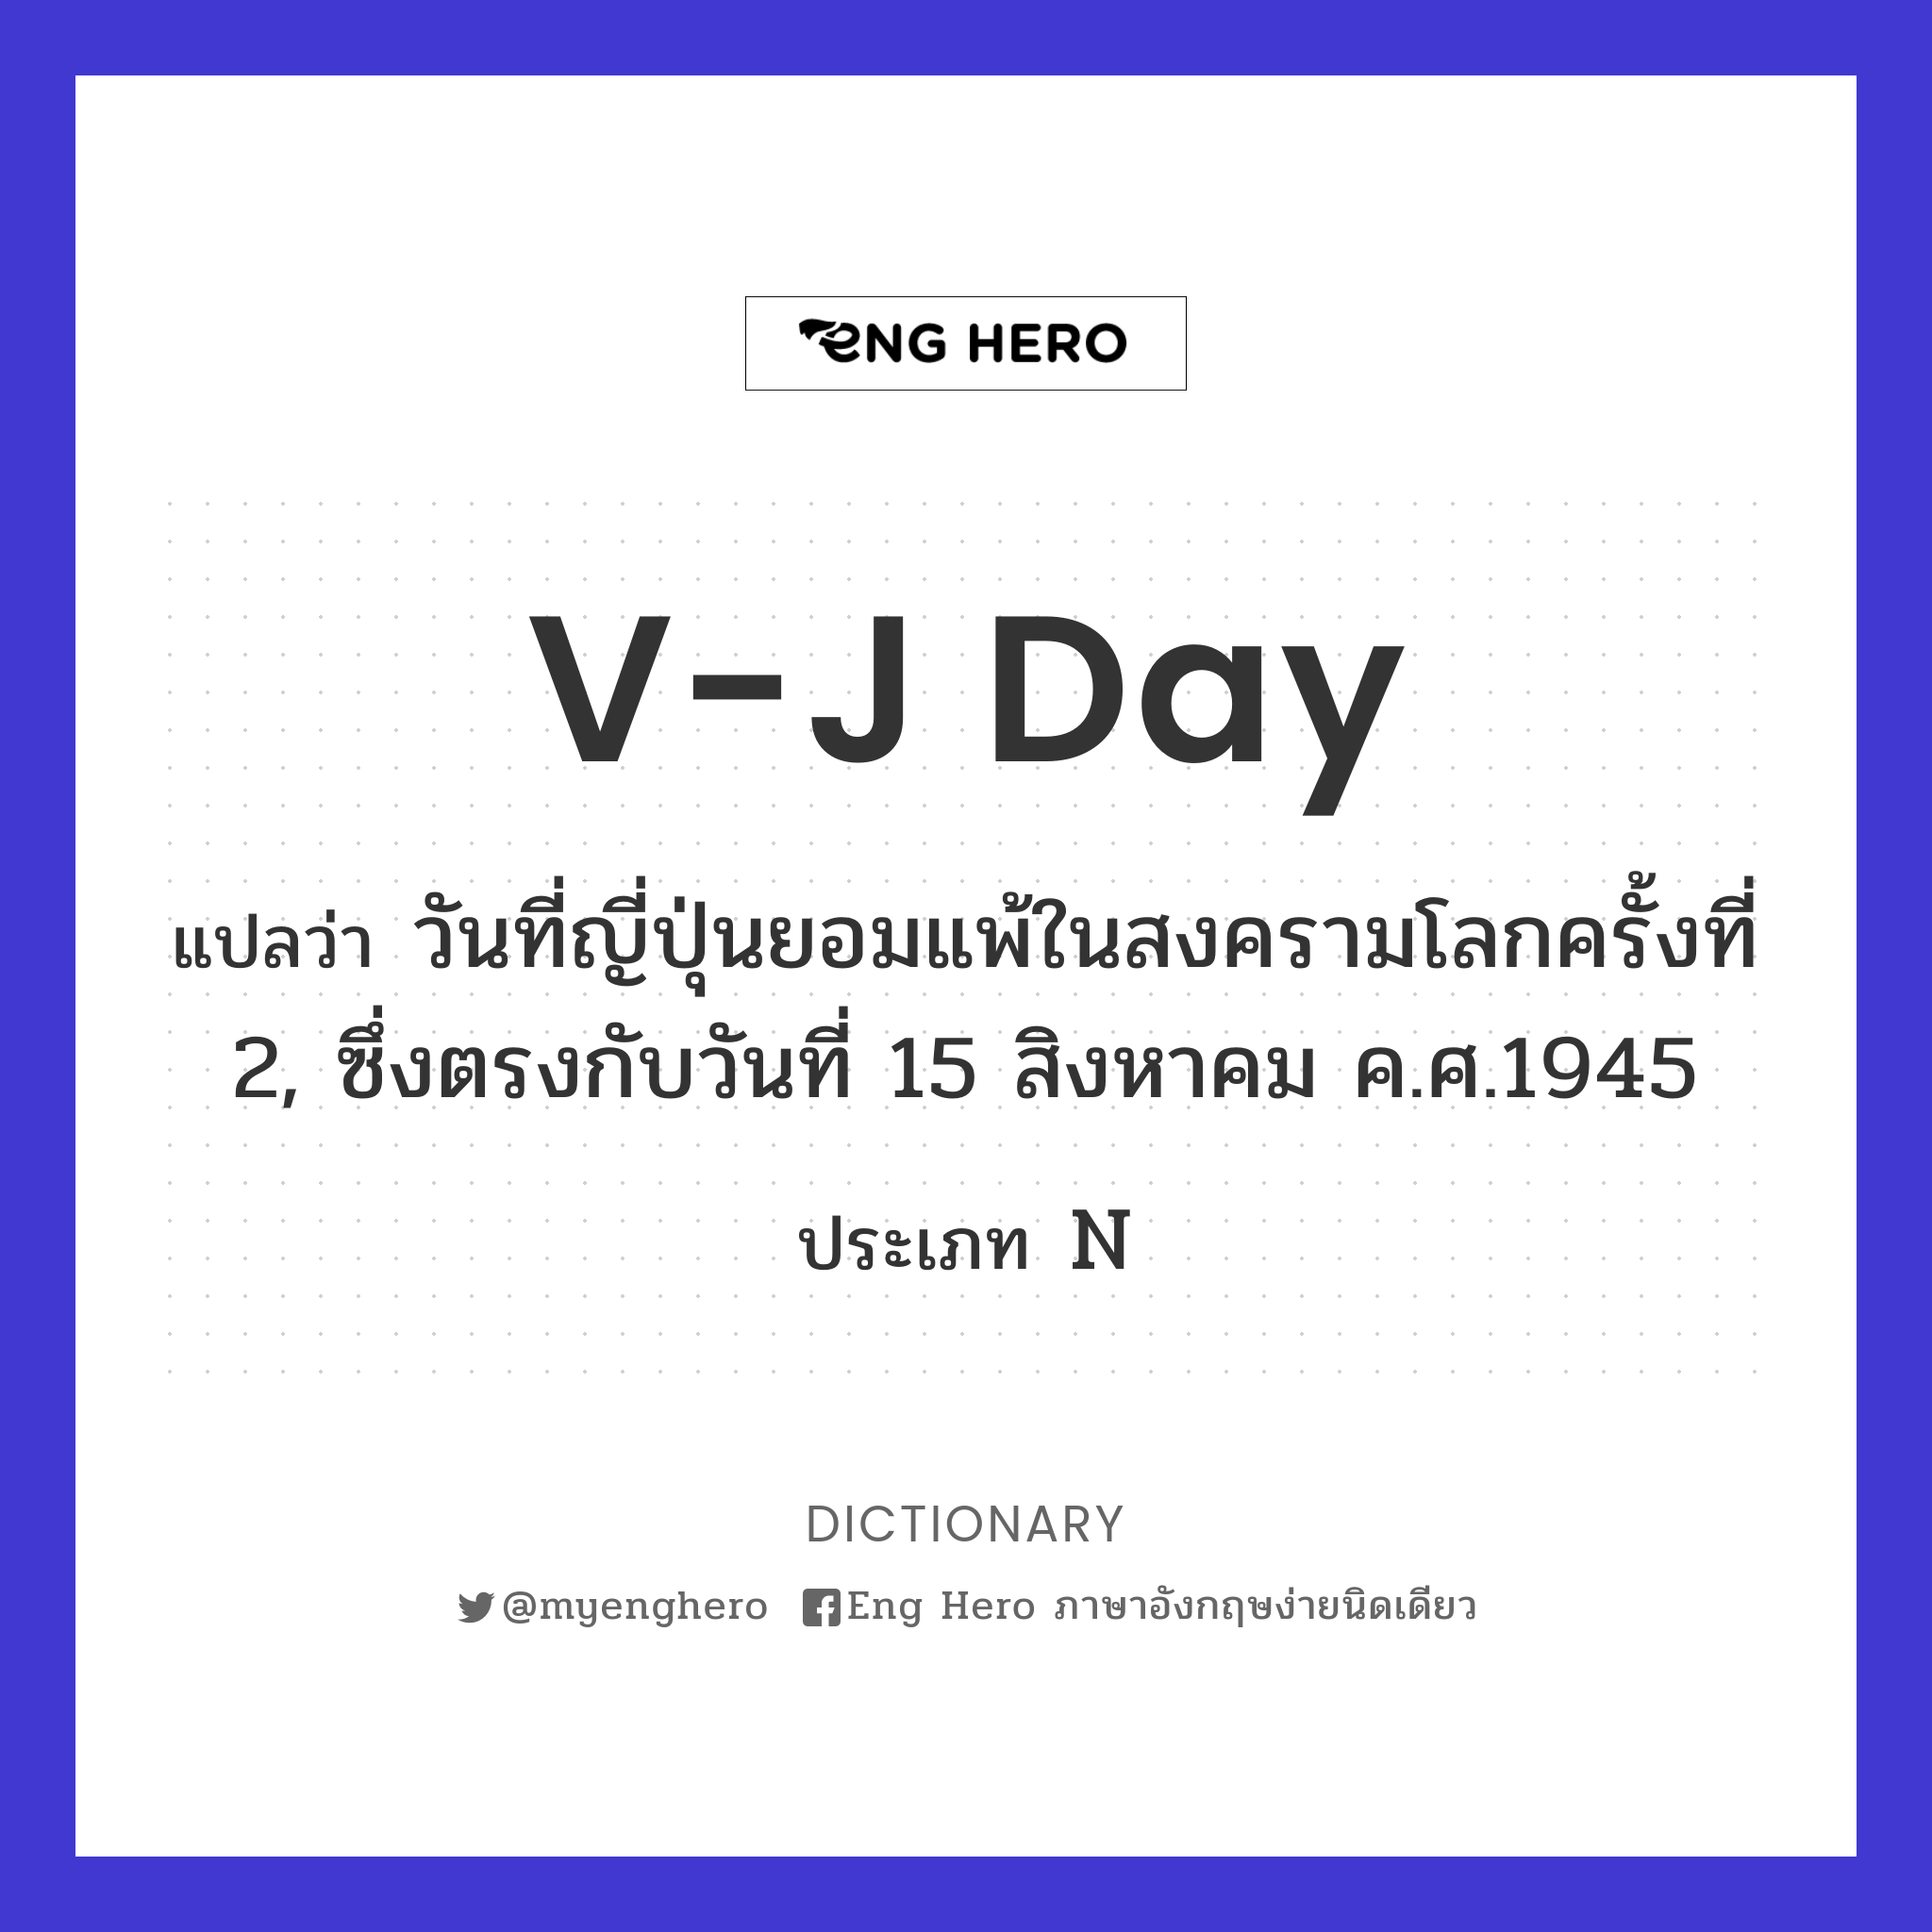 V-J Day